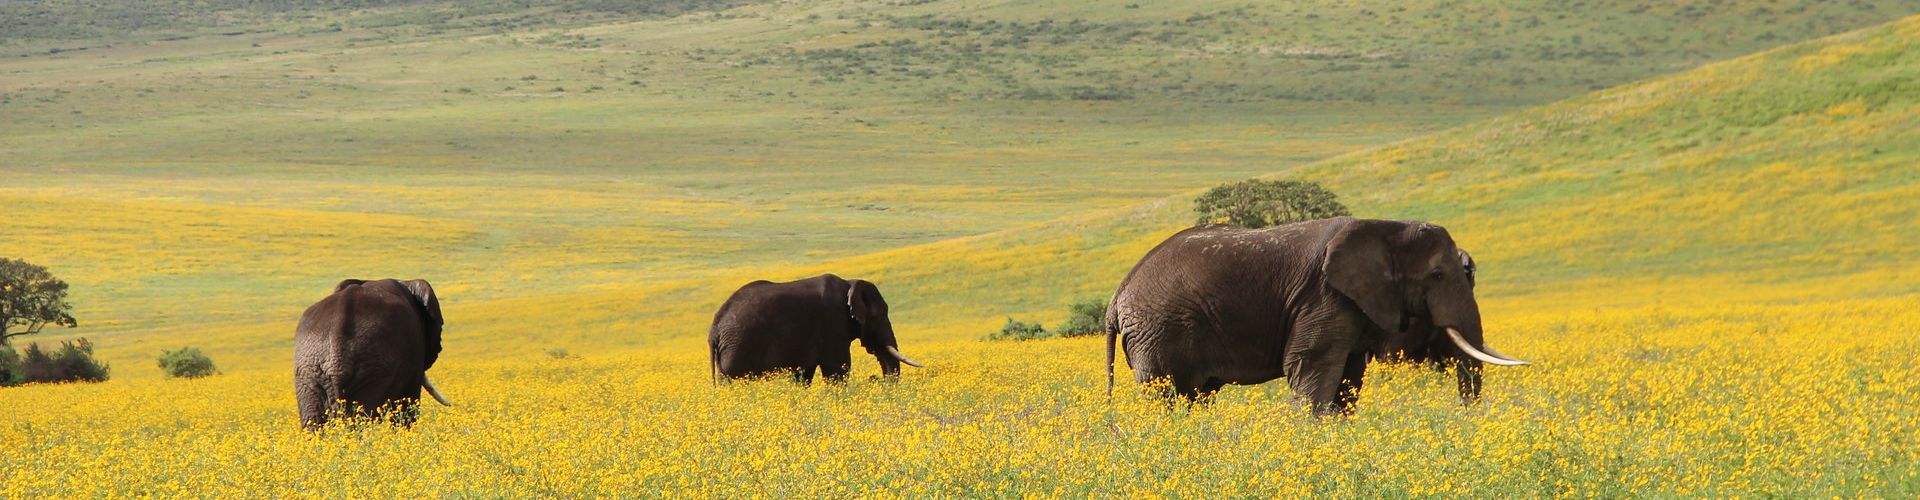 Onze 4 Daagse Safari Tanzania brengt u naar de olifanten van het Ngorongoro Conservation Area